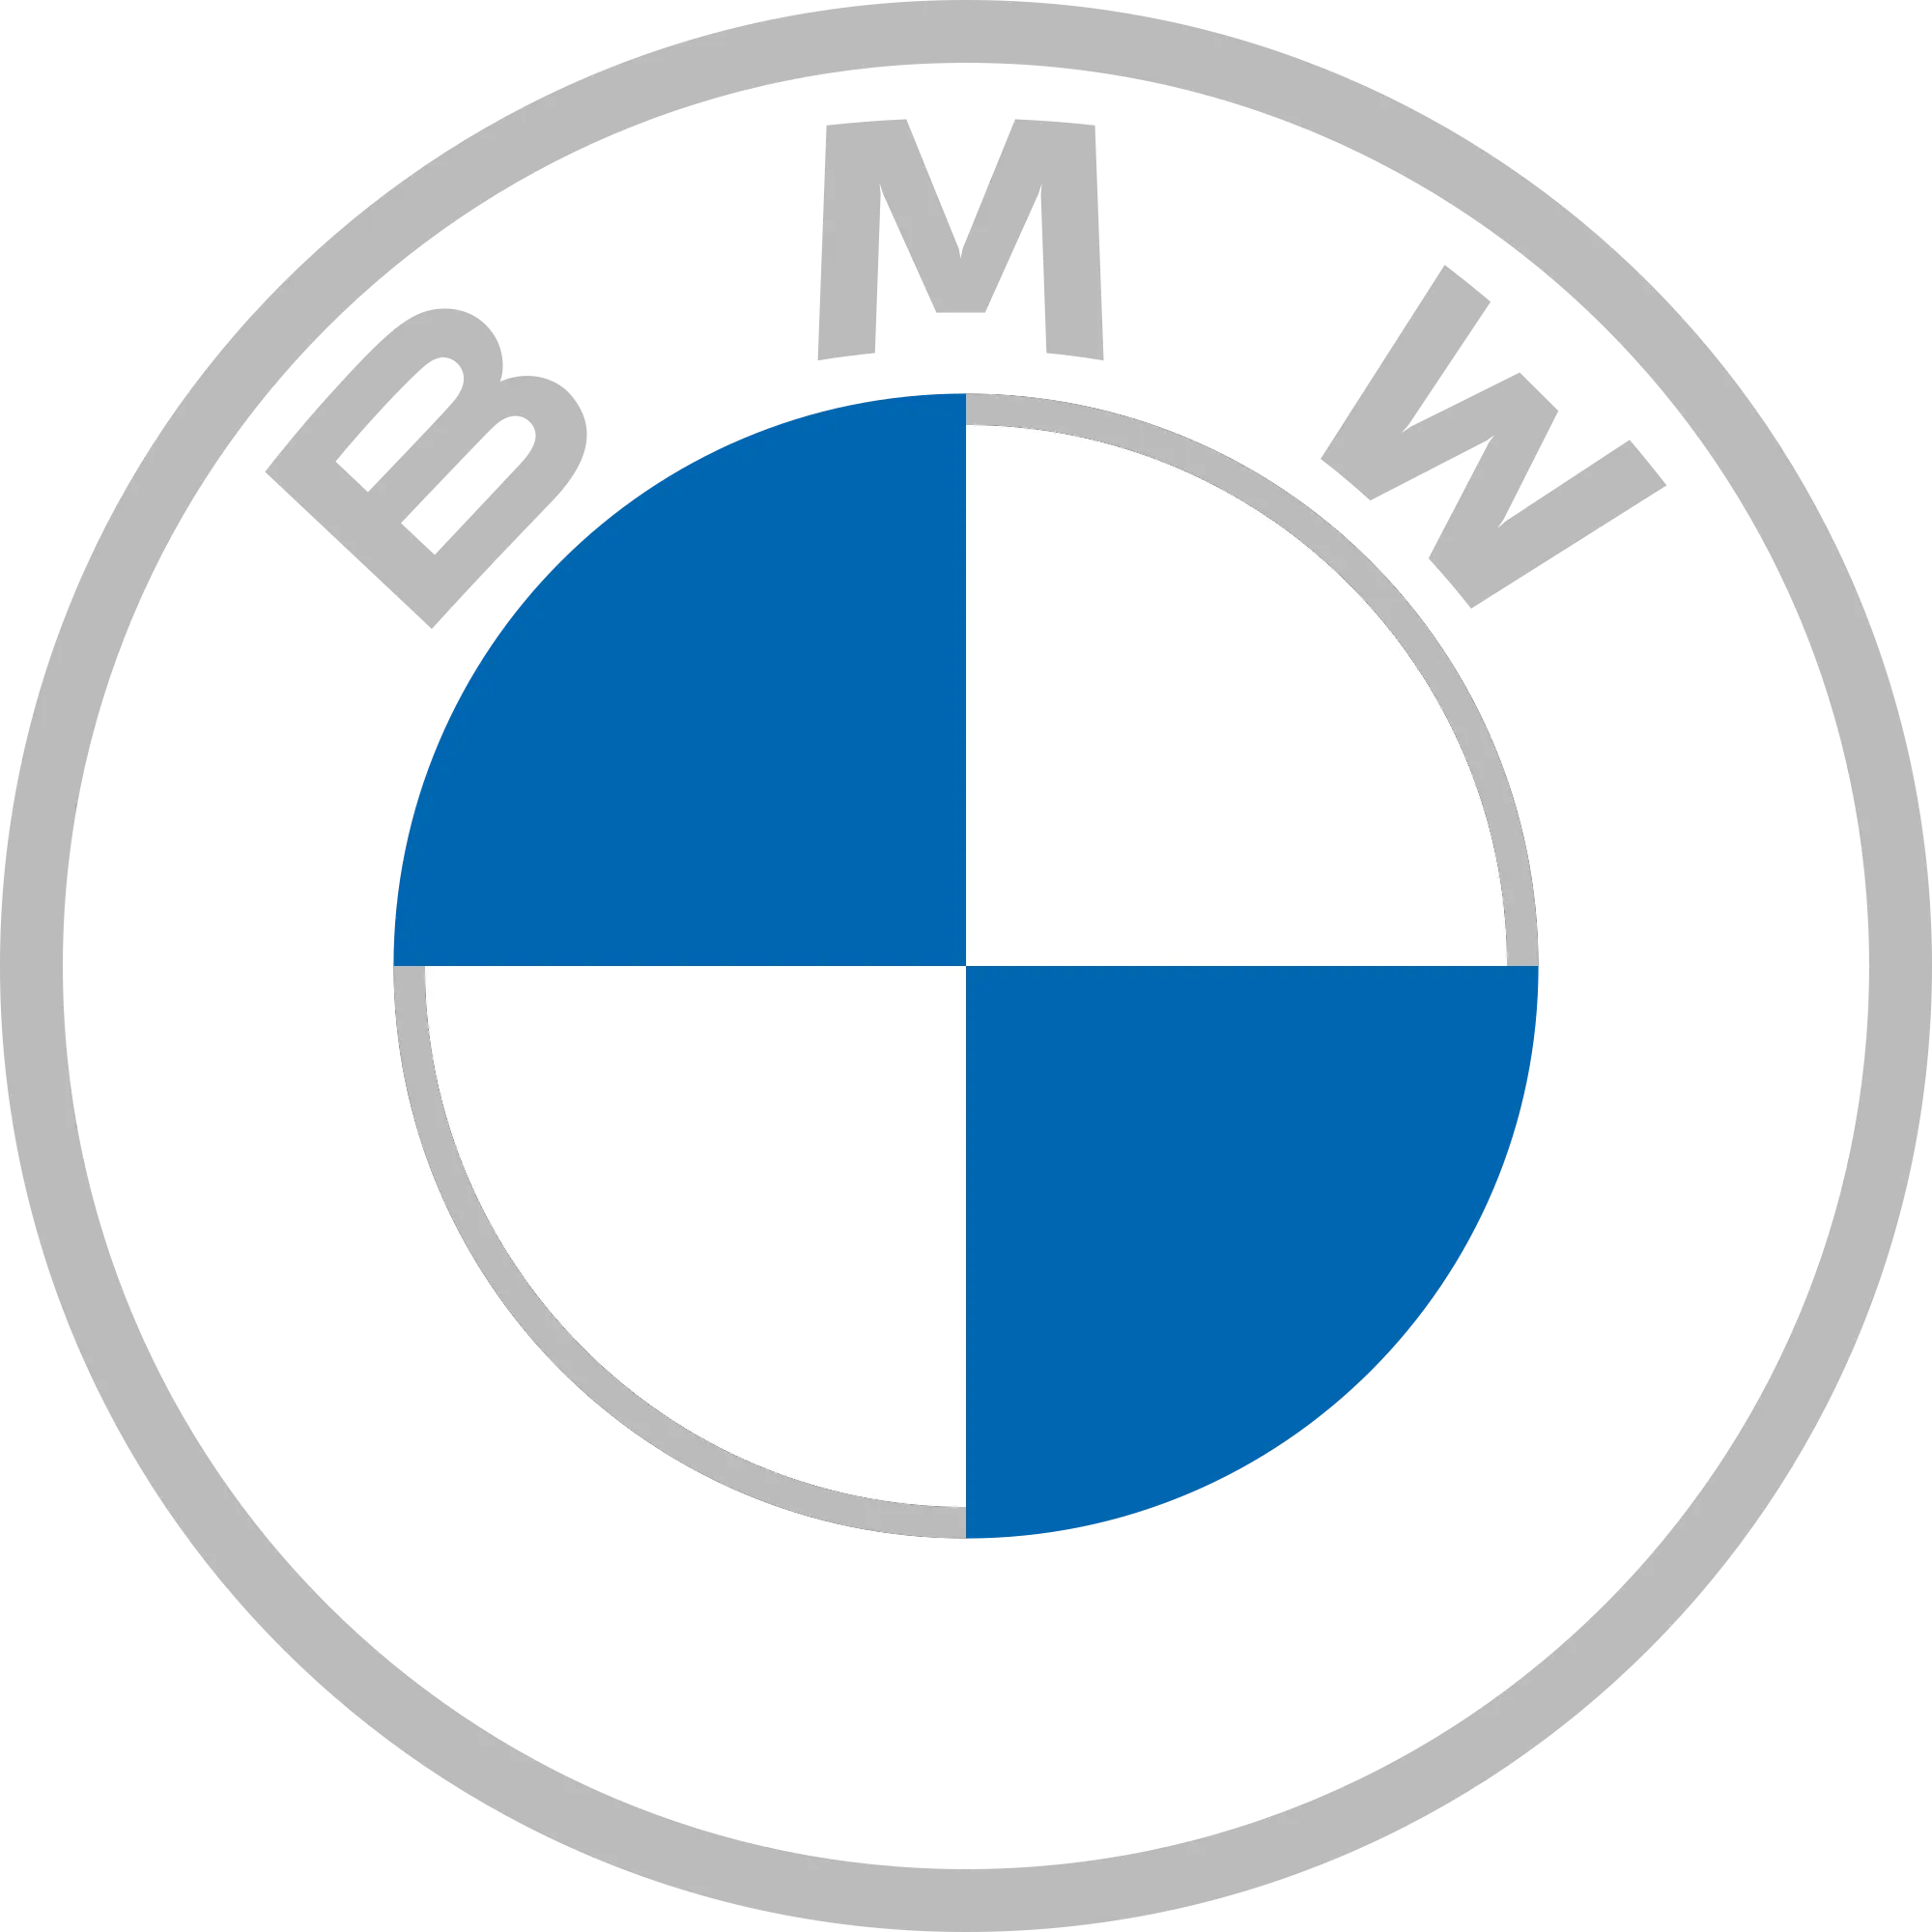 BMW CASE STUDY Marktforschung